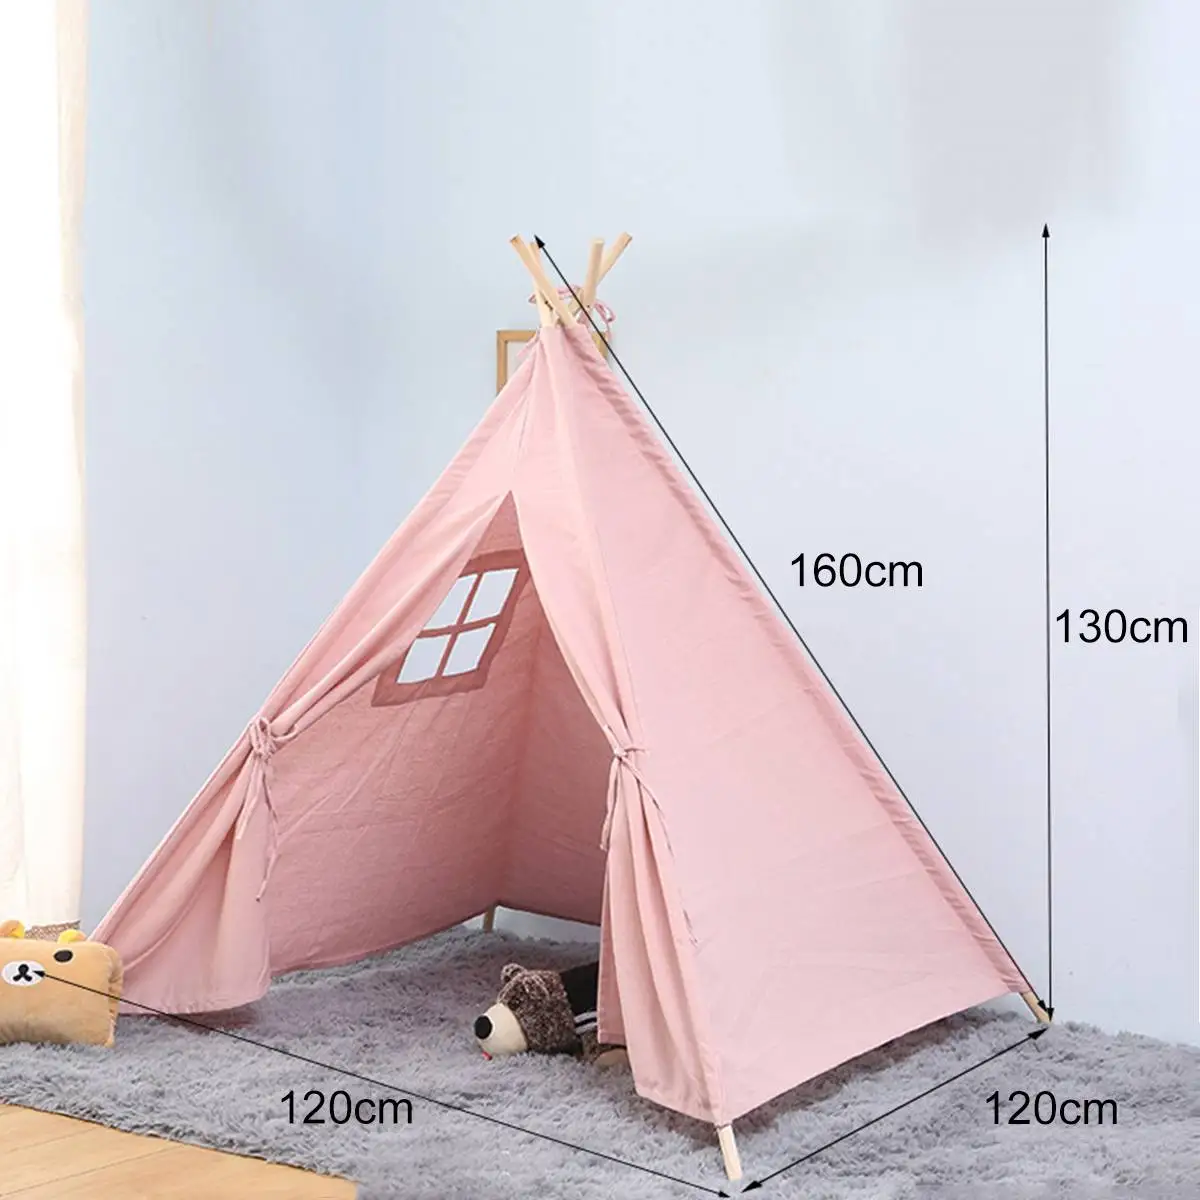 5 Тип большая палатка teepee дети хлопок холст ролевые игры дом мальчик девочки Wigwam подарок игровой дом Индия палатка-вигвам - Цвет: Pink